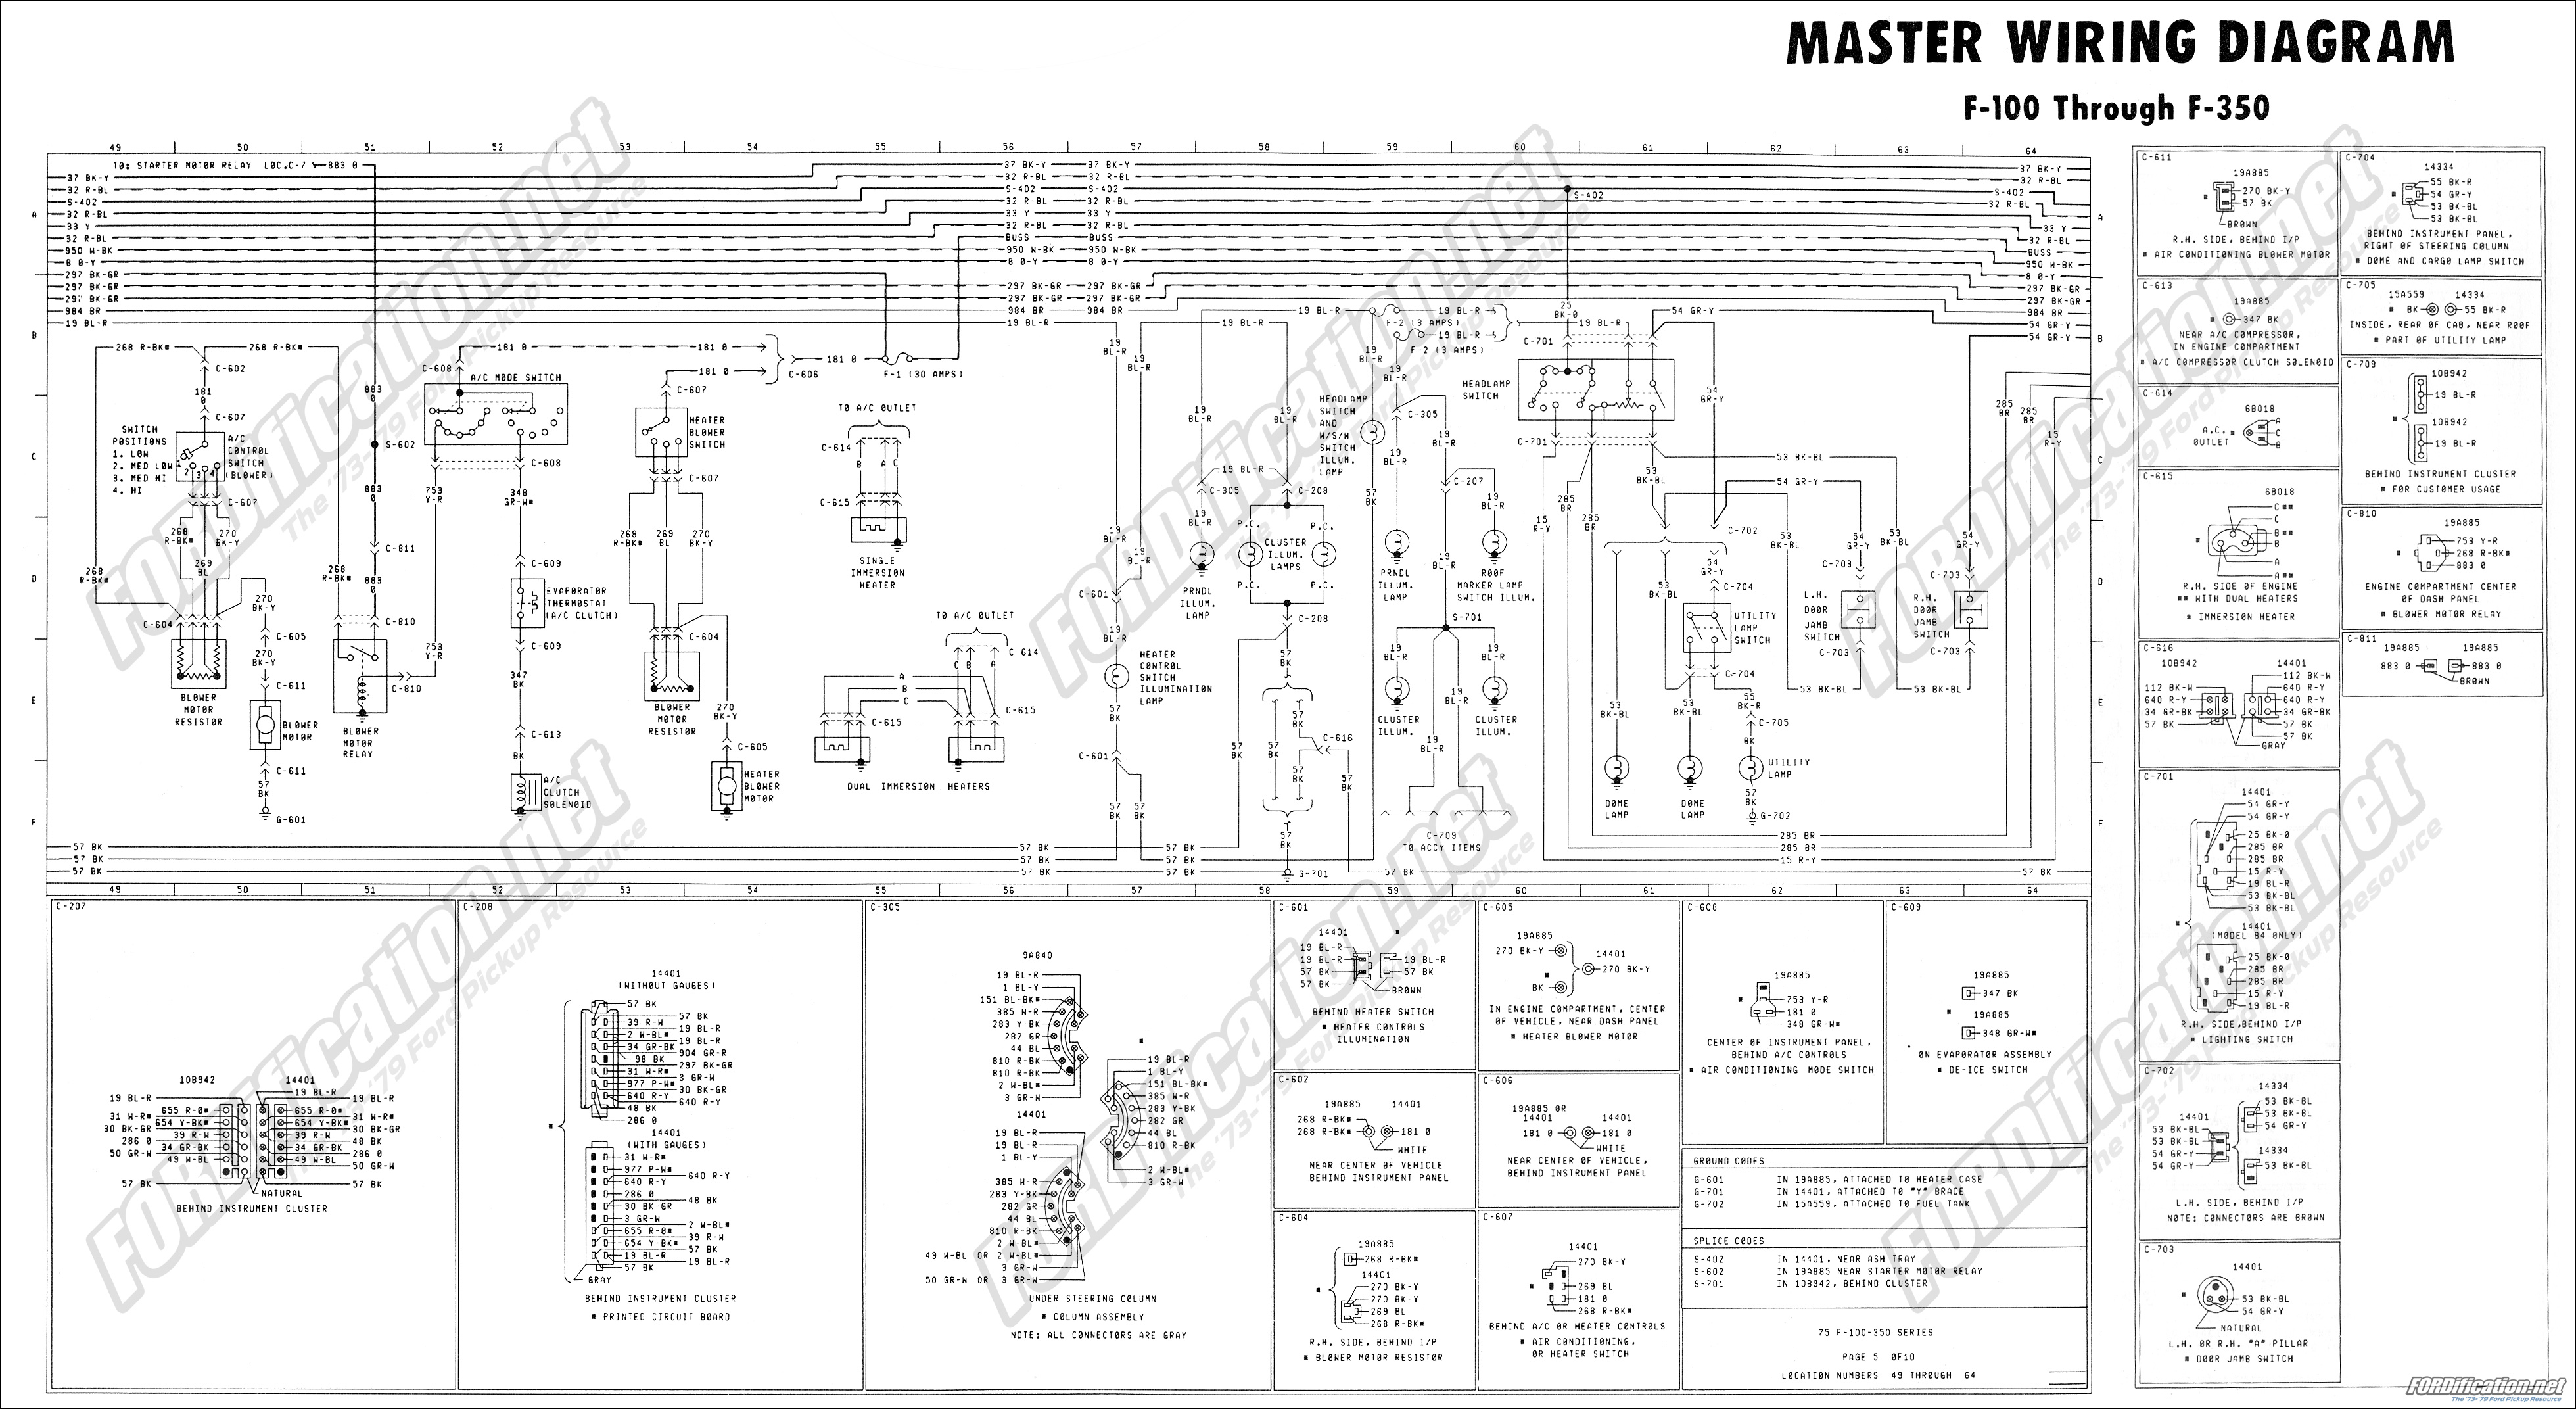 1973-1979 Ford Truck Wiring Diagrams & Schematics - FORDification.net Ford L9000 Wiring Schematic FORDification.net